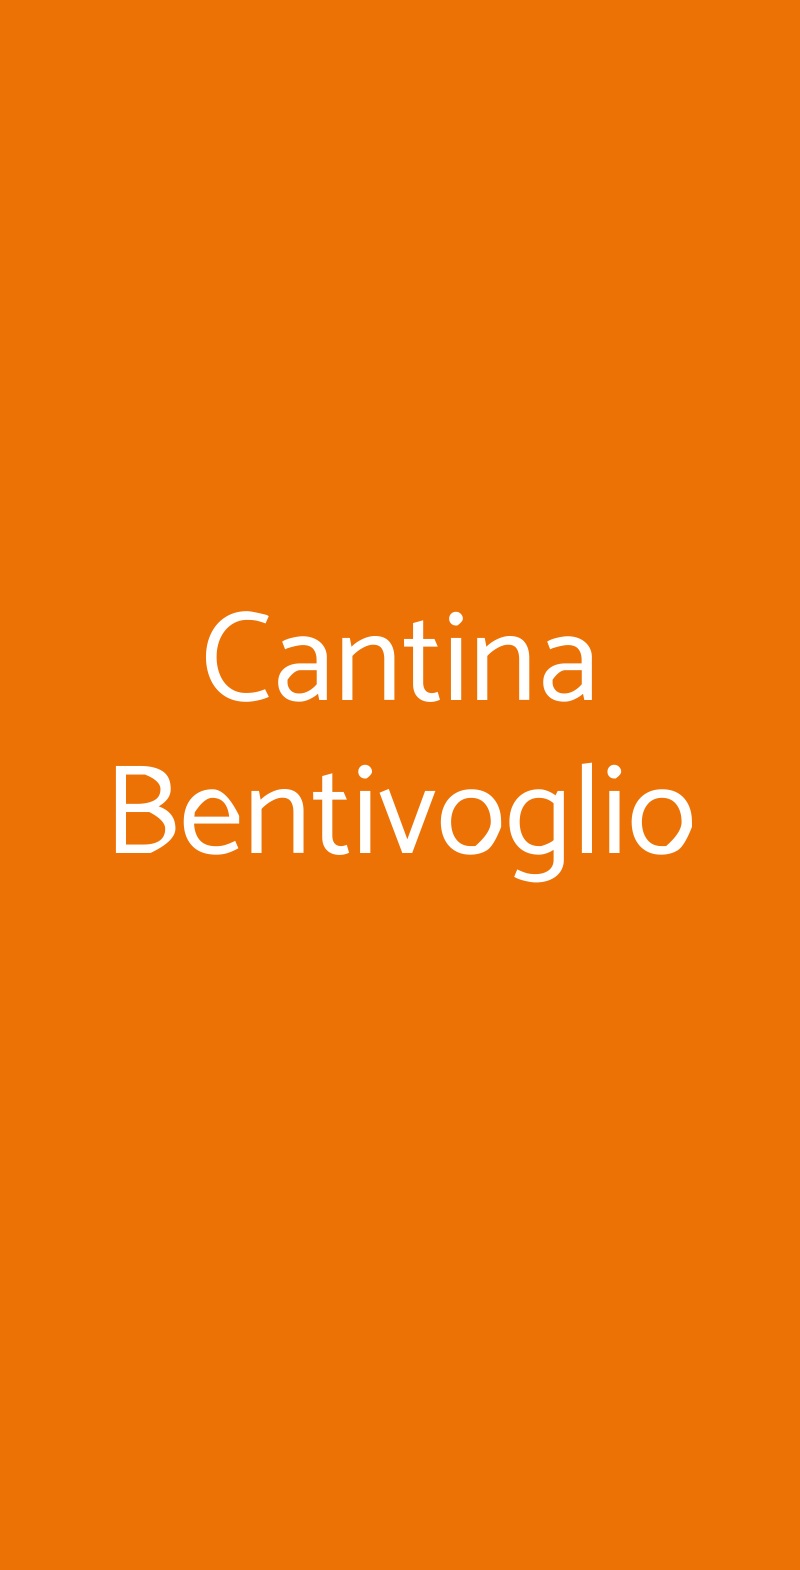 Cantina Bentivoglio Bologna menù 1 pagina